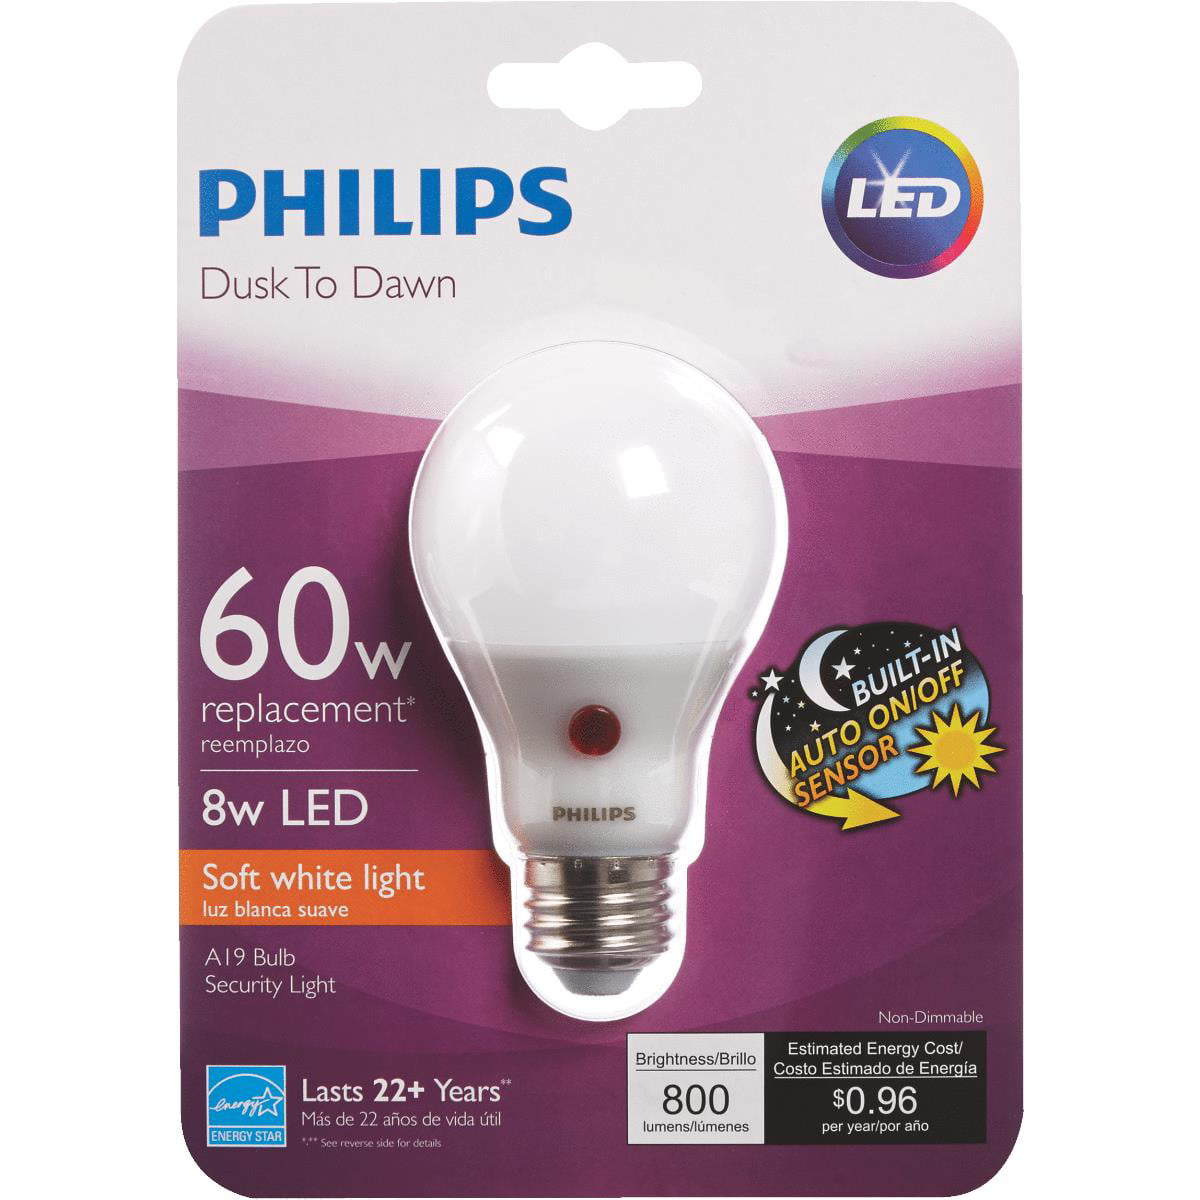 Филипс перевод. Philips Light. Philips +60. Philips el3510. Philips 222el.